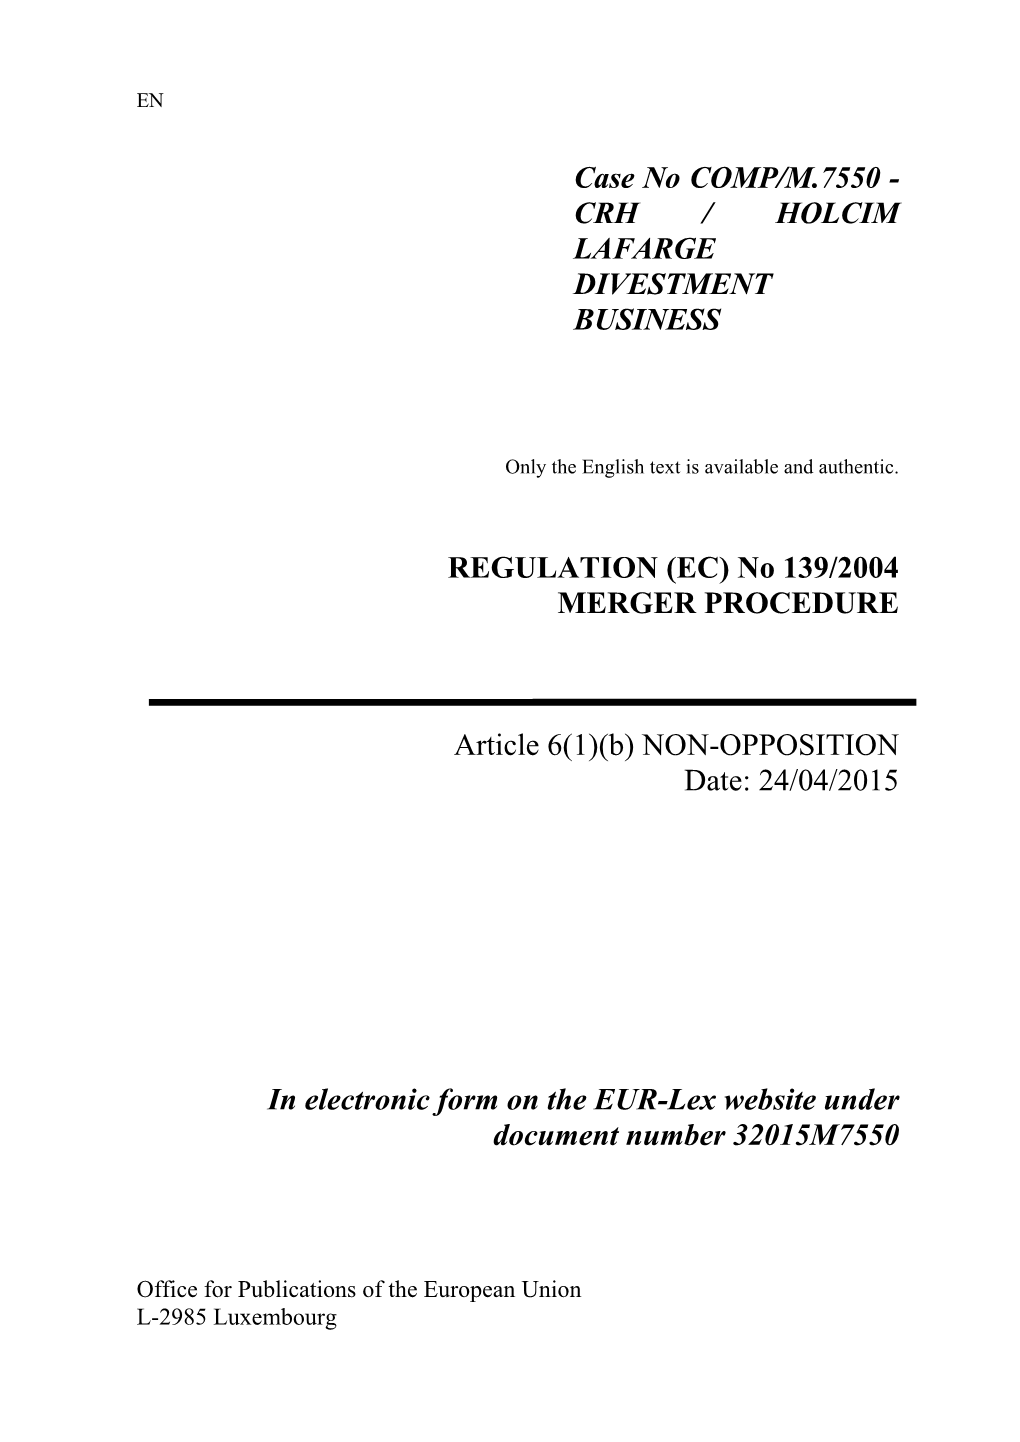 Case No COMP/M.7550 - CRH / HOLCIM LAFARGE DIVESTMENT BUSINESS